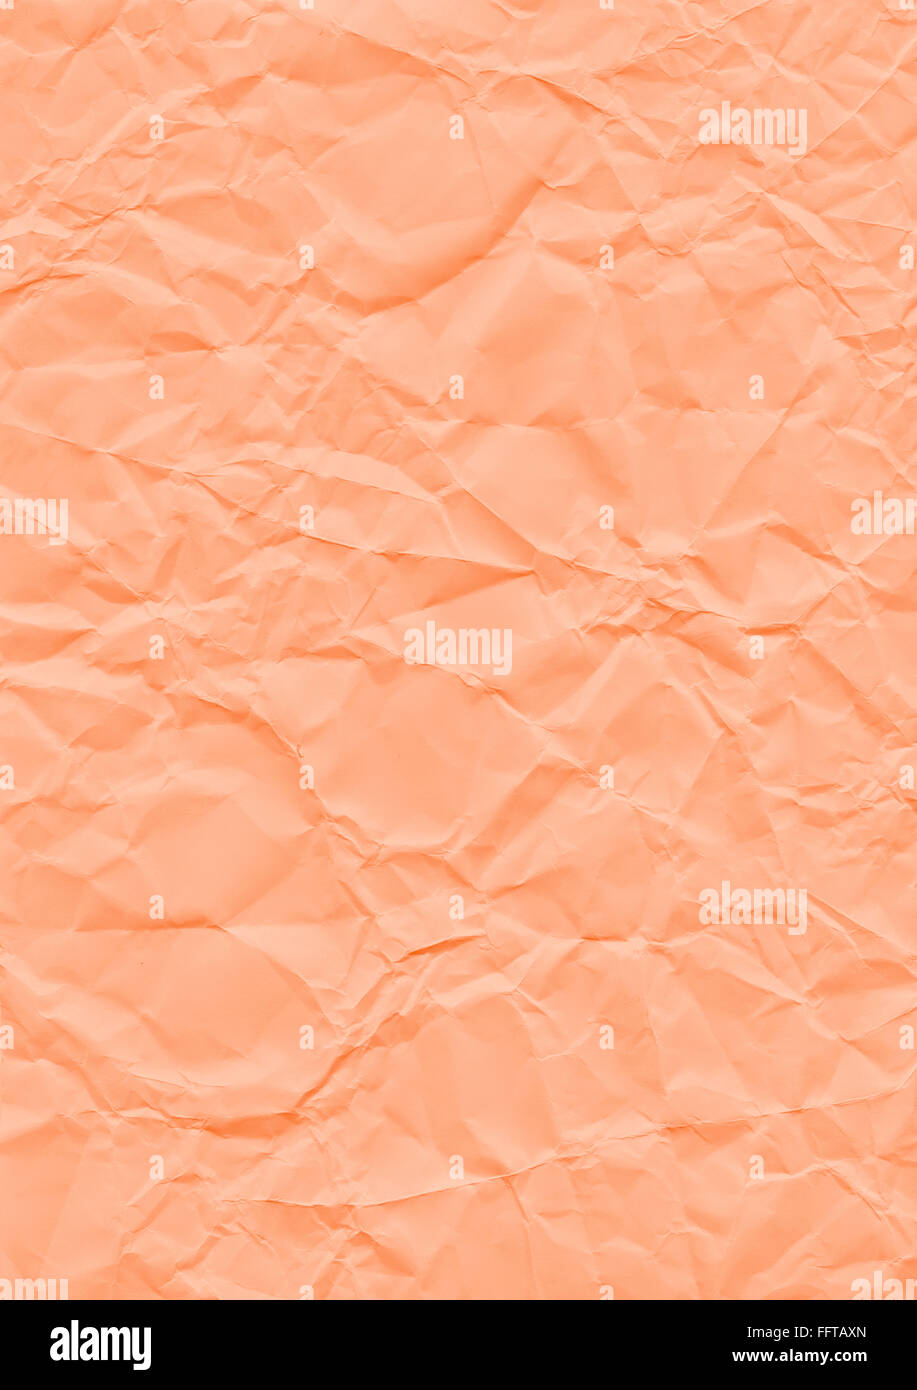 Tejedora Hintergrund naranja Papier geknickt Knicke knicken zerknittert Knautsch zerknautscht kaputt gefaltet falten faltig Textur Foto de stock